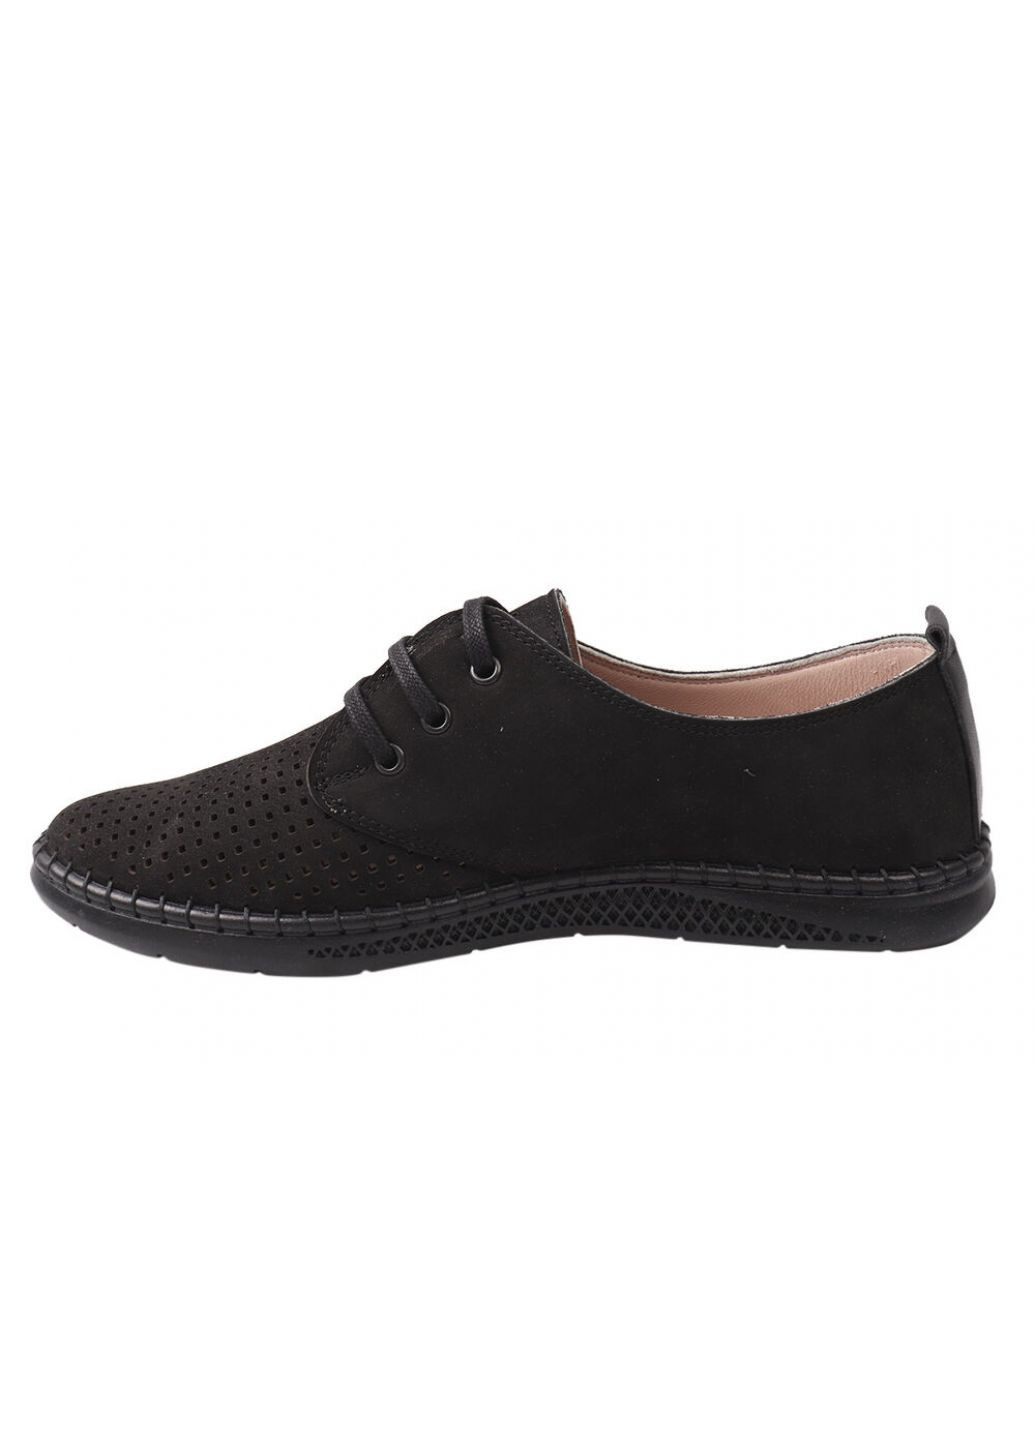 Черные туфли комфорт мужские из натуральной кожи (нубук), на низком ходу, на шнуровке, черные, ALTURA